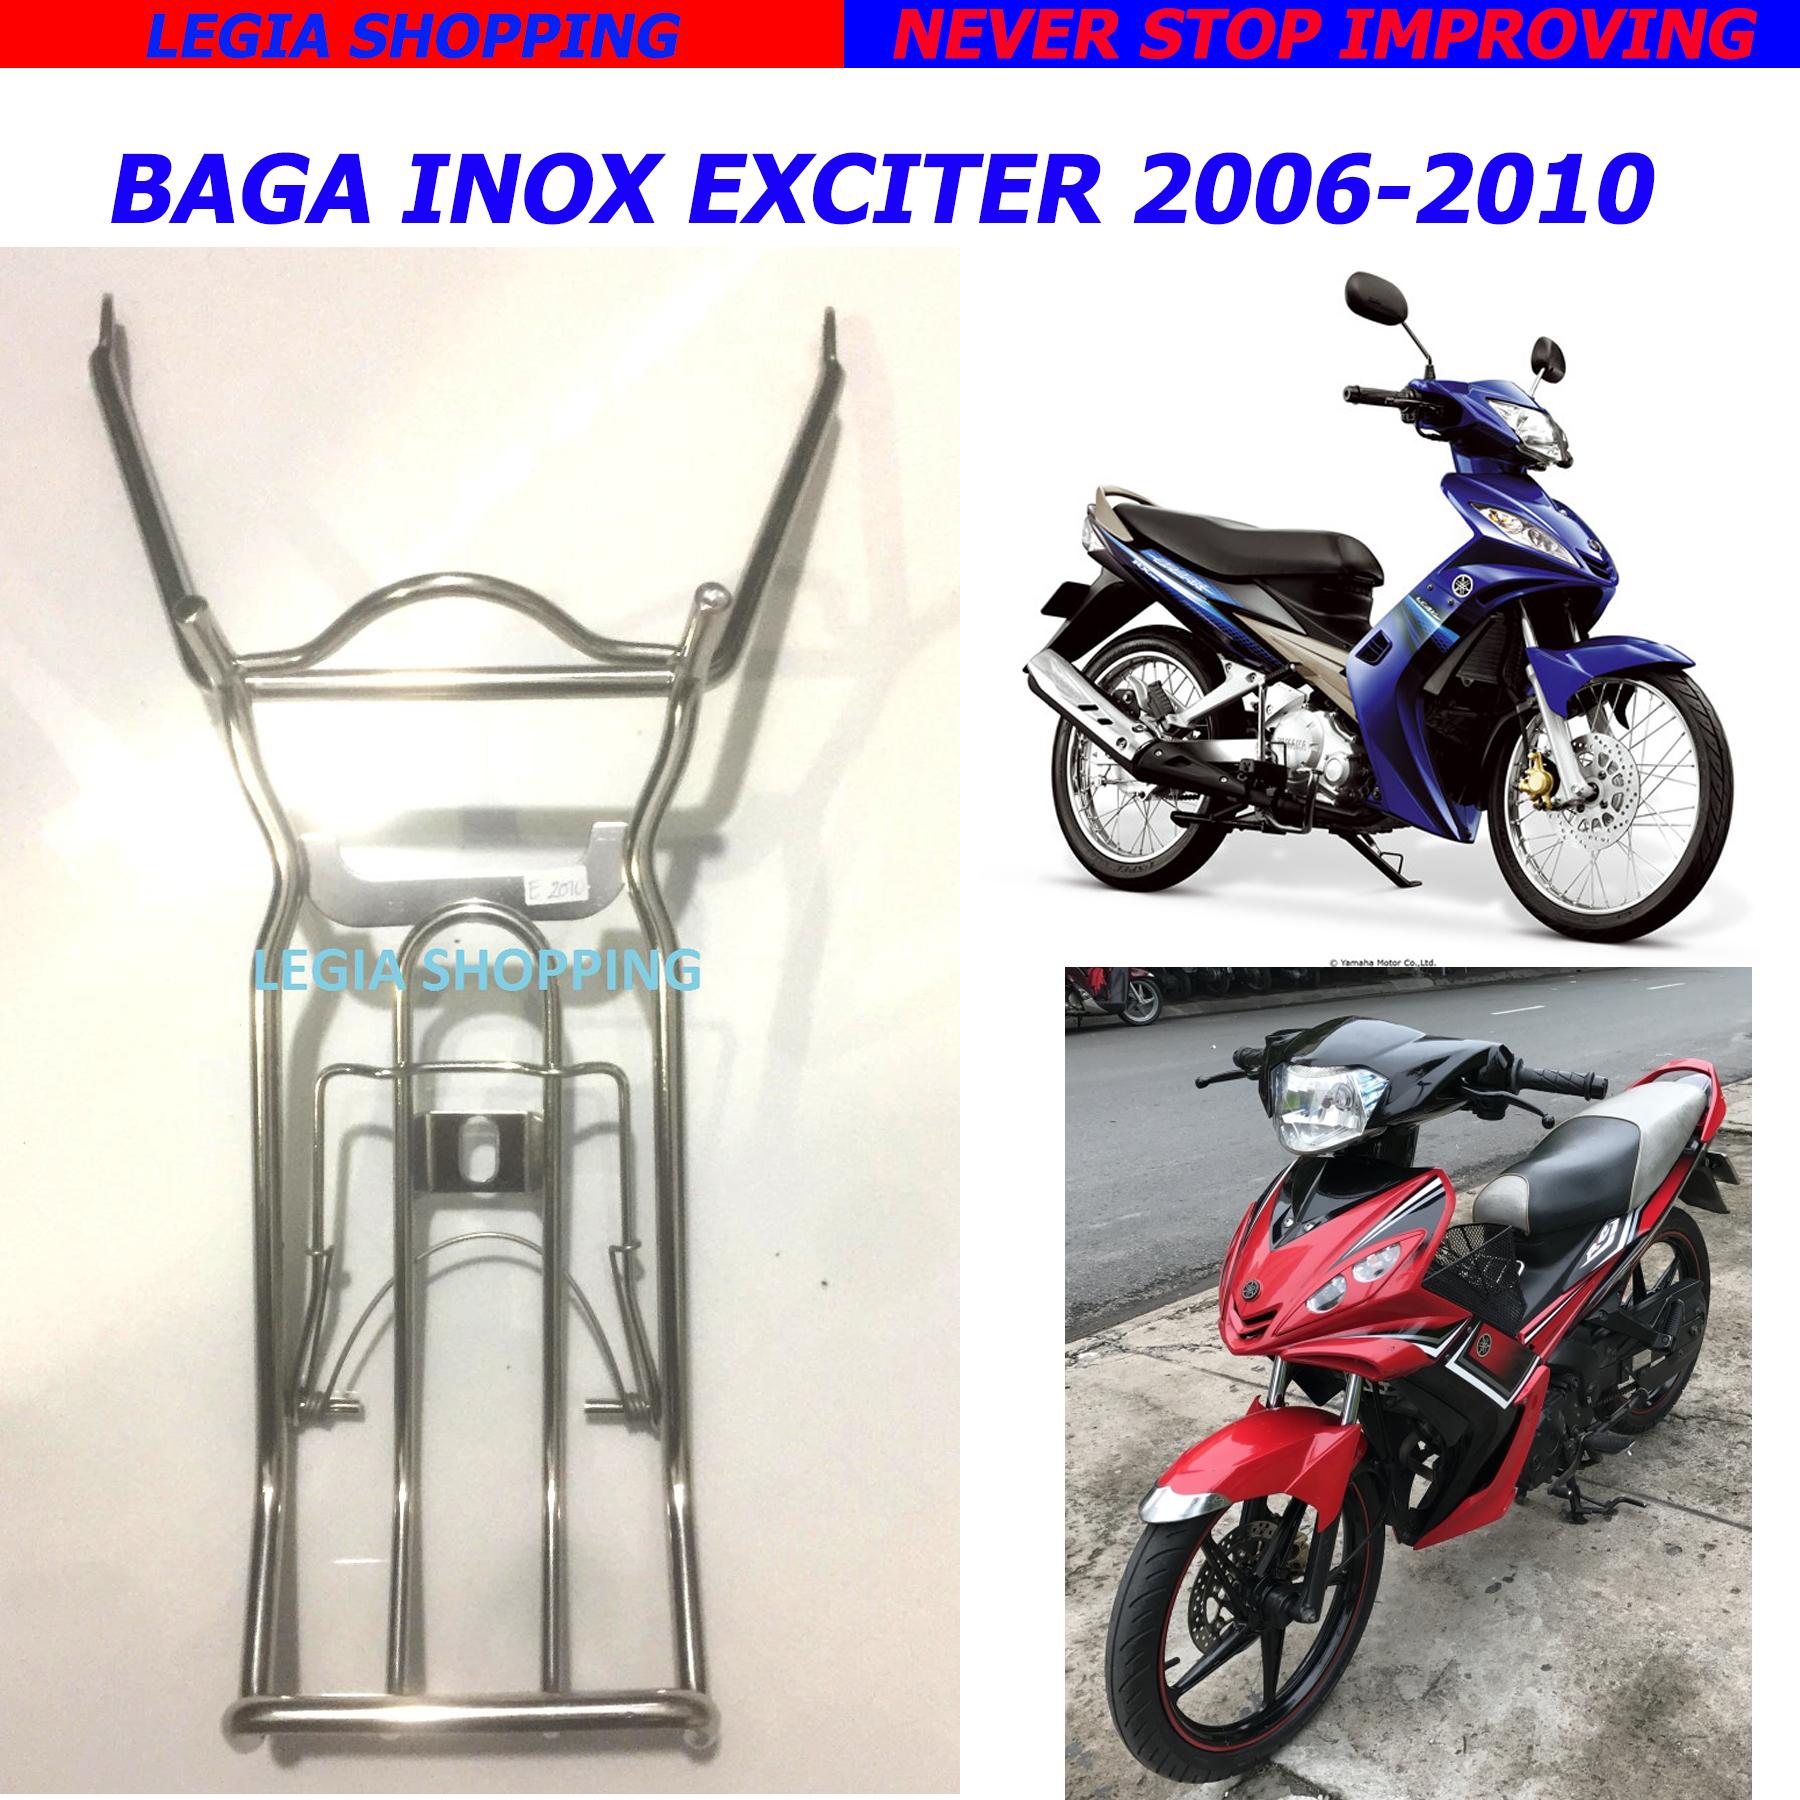 BAGA BẰNG TITANIUM CHO XE EXCITER 135  BỀN ĐẸP Baga inox 7 màu Baga titan  7 màu là một trong những sản phẩm cực kỳ ưa chuộng của người dùng xế